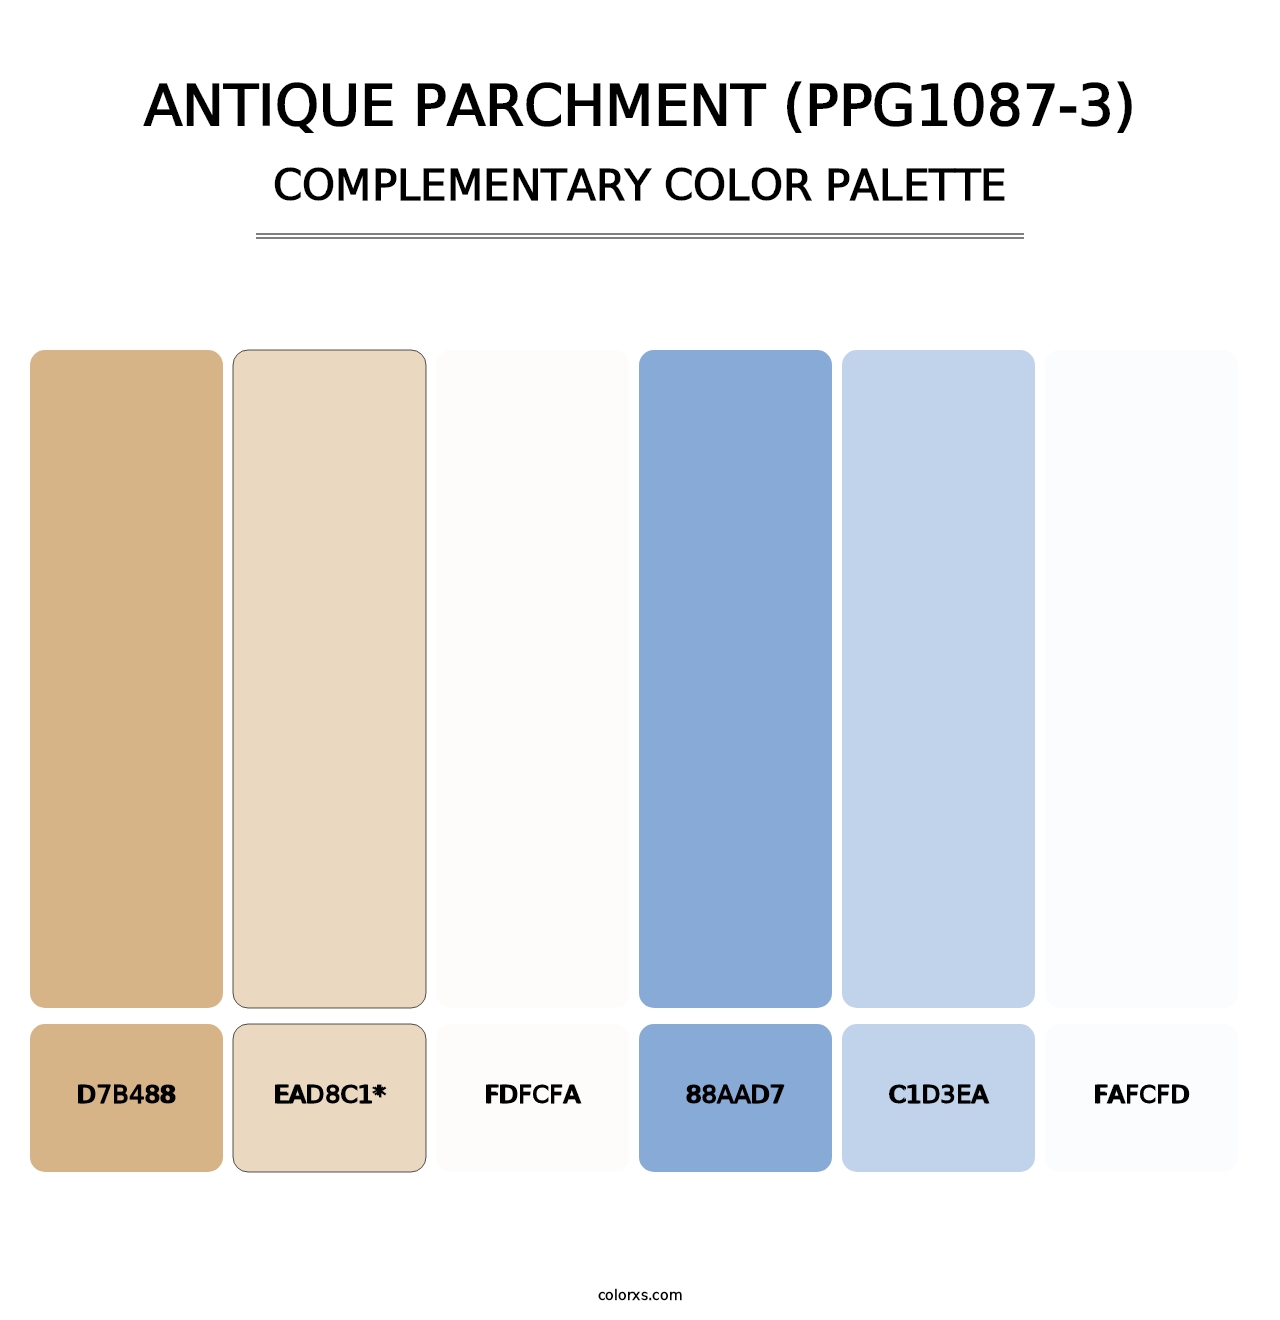 Antique Parchment (PPG1087-3) - Complementary Color Palette